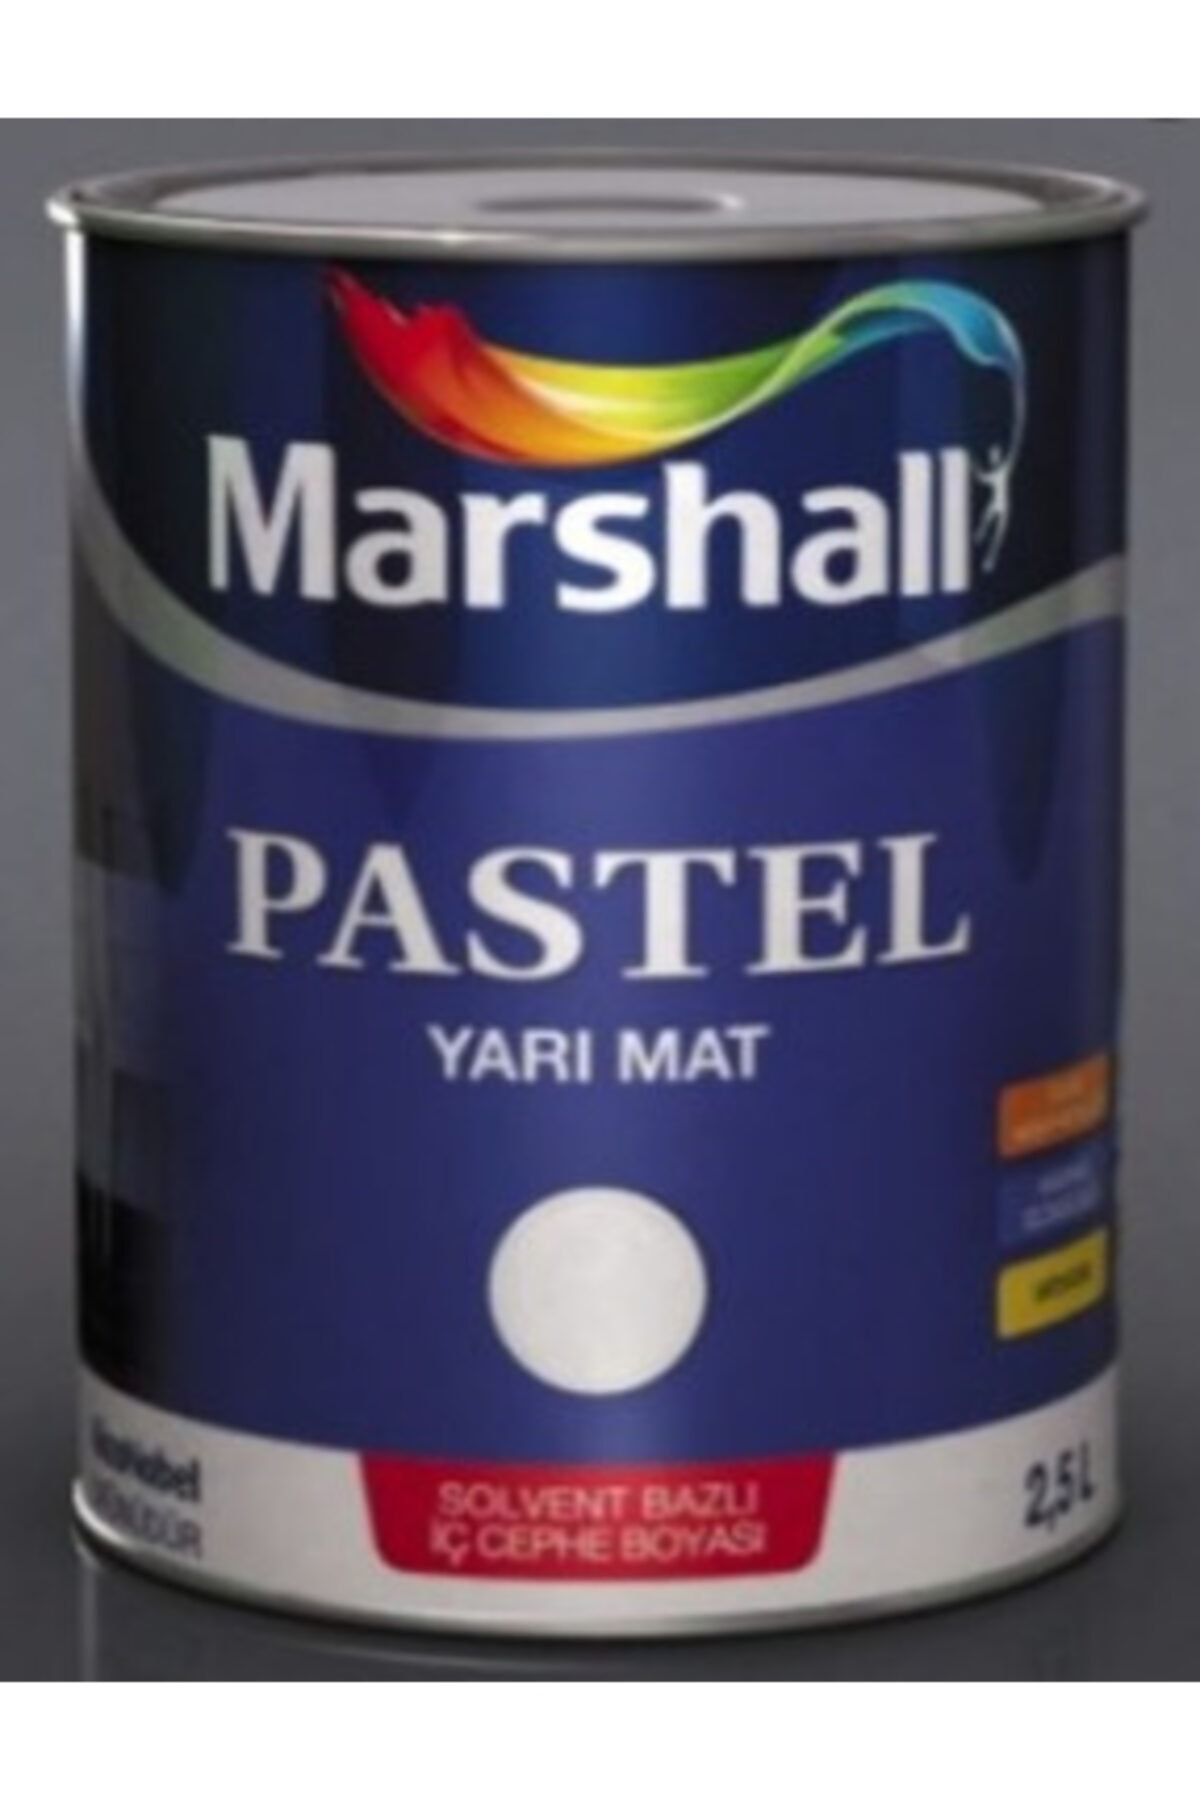 Marshall Pastel Yarımat Duvar-ahşap-metal Boyası 2,5 Lt Beyaz